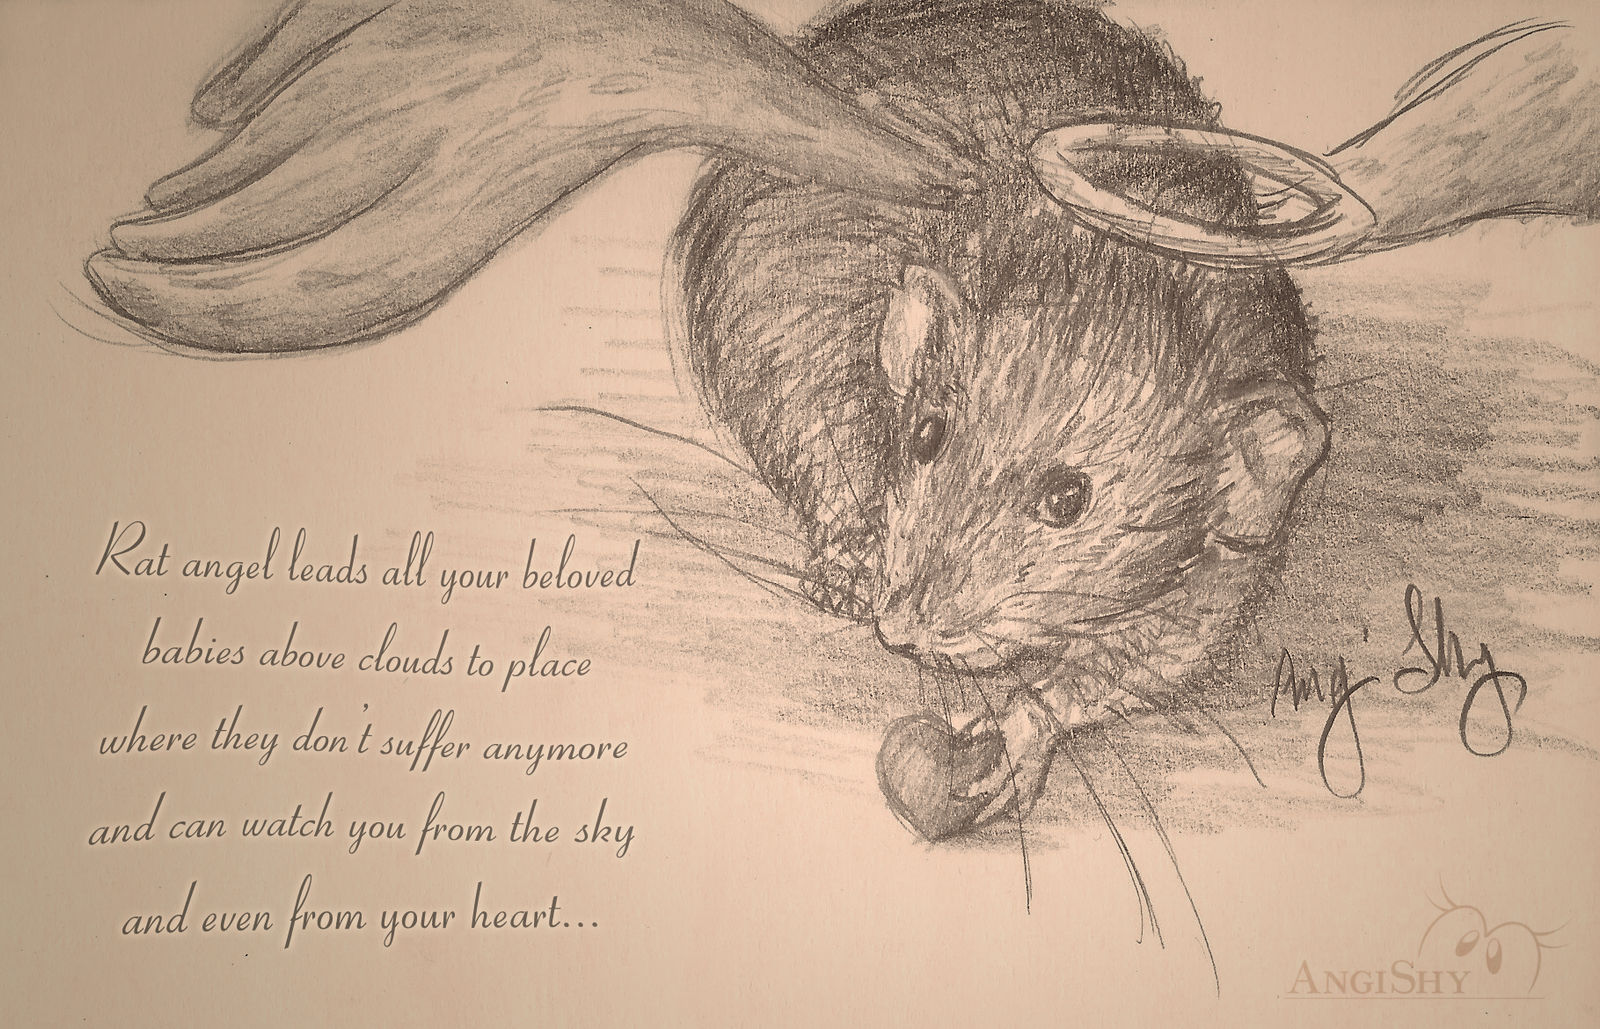 Rat angel - in memory of Crumb